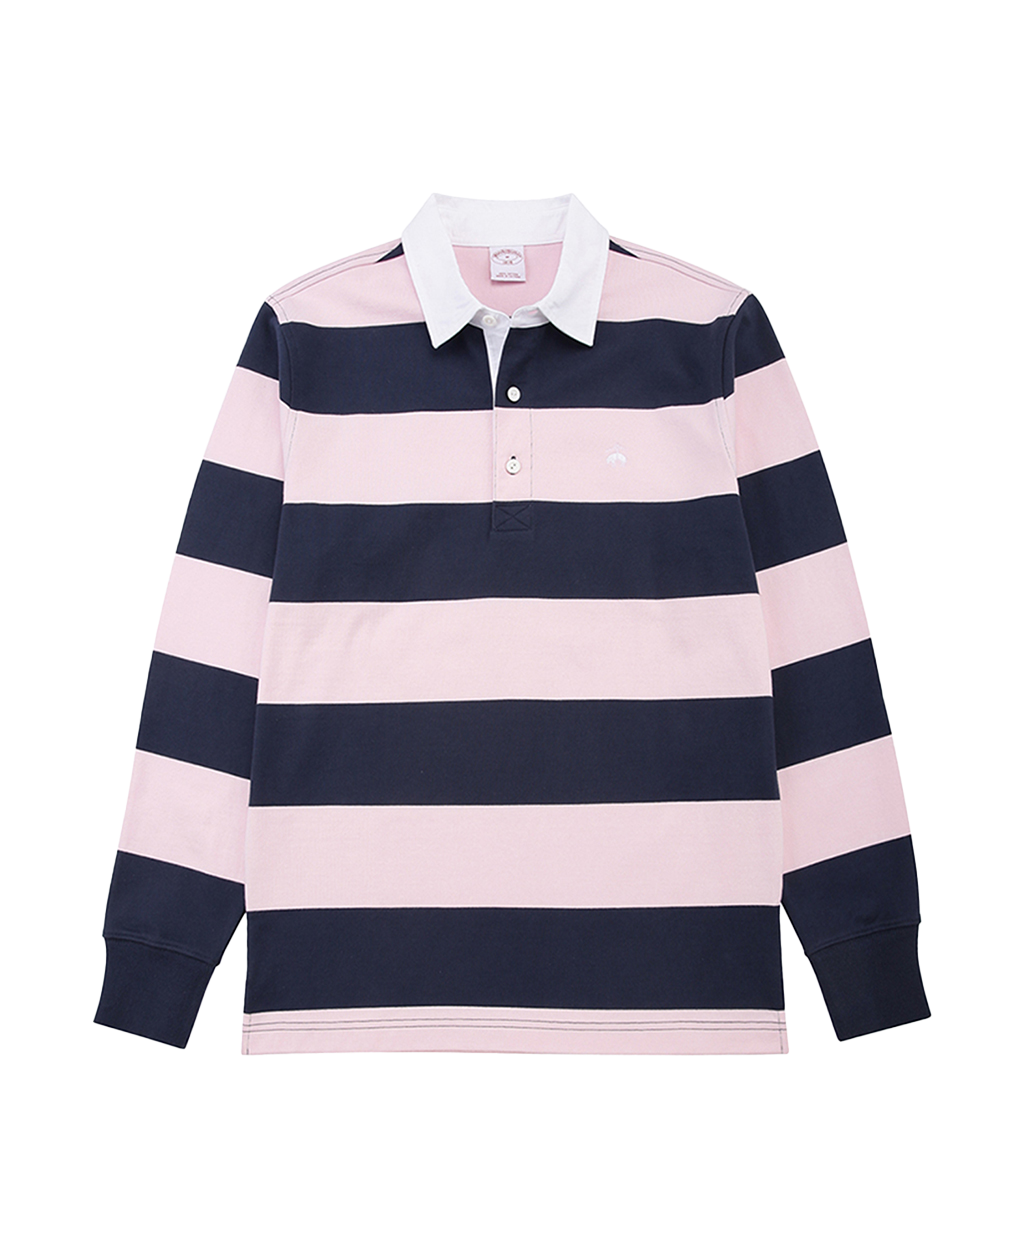 스트라이프 럭비 셔츠 (핑크/네이비)